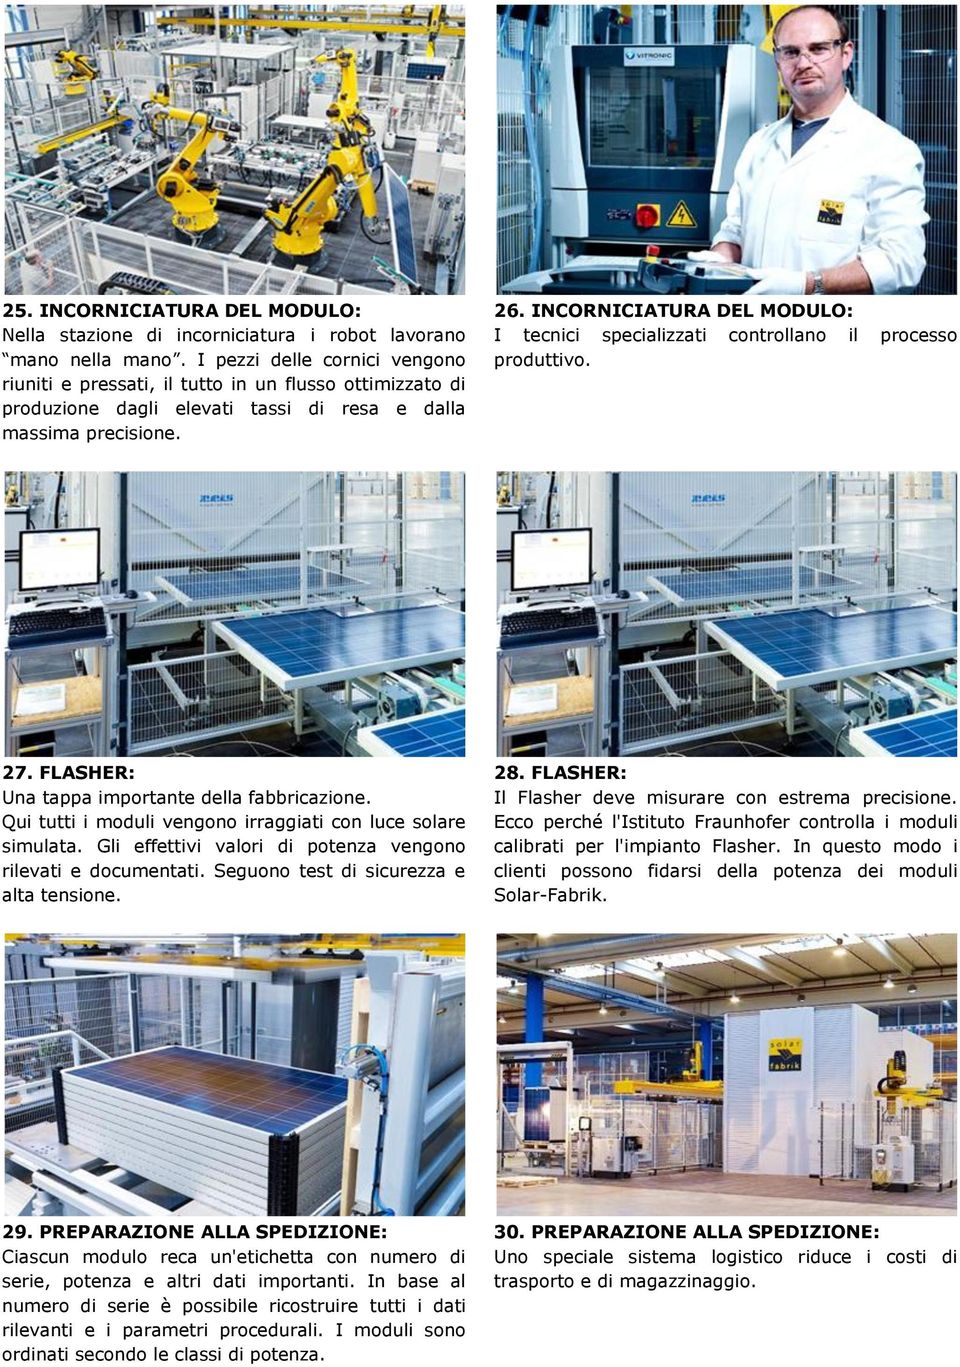 INCORNICIATURA DEL MODULO: I tecnici specializzati controllano il processo produttivo. 27. FLASHER: Una tappa importante della fabbricazione.